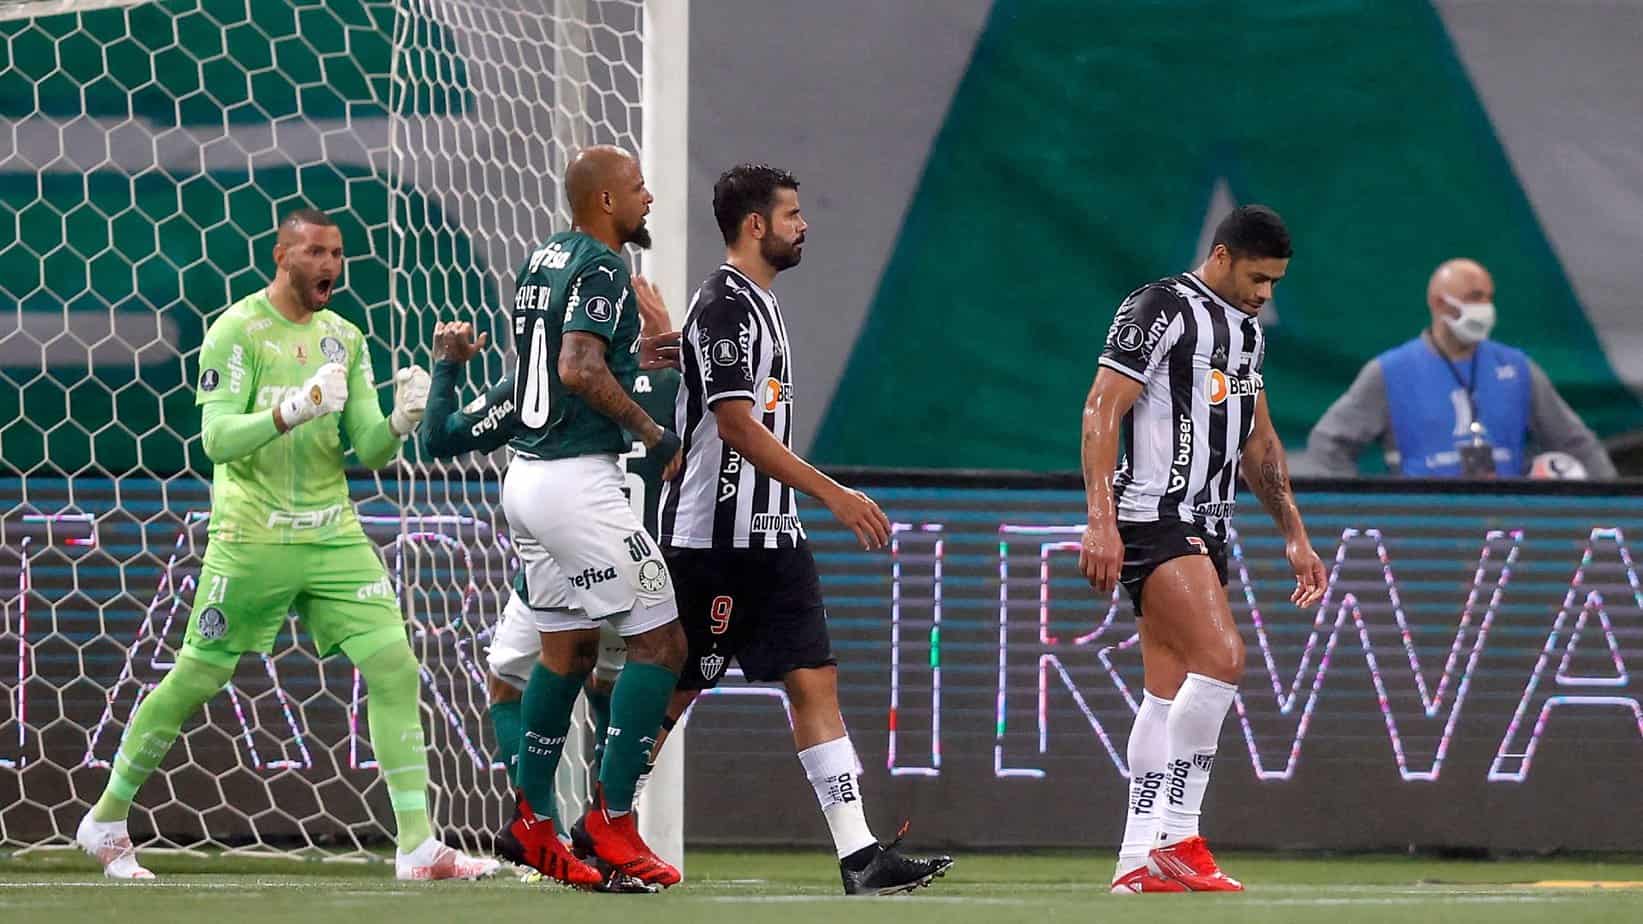 Palmeiras vs. Atlético Mineiro – Betting Odds and Free Pick